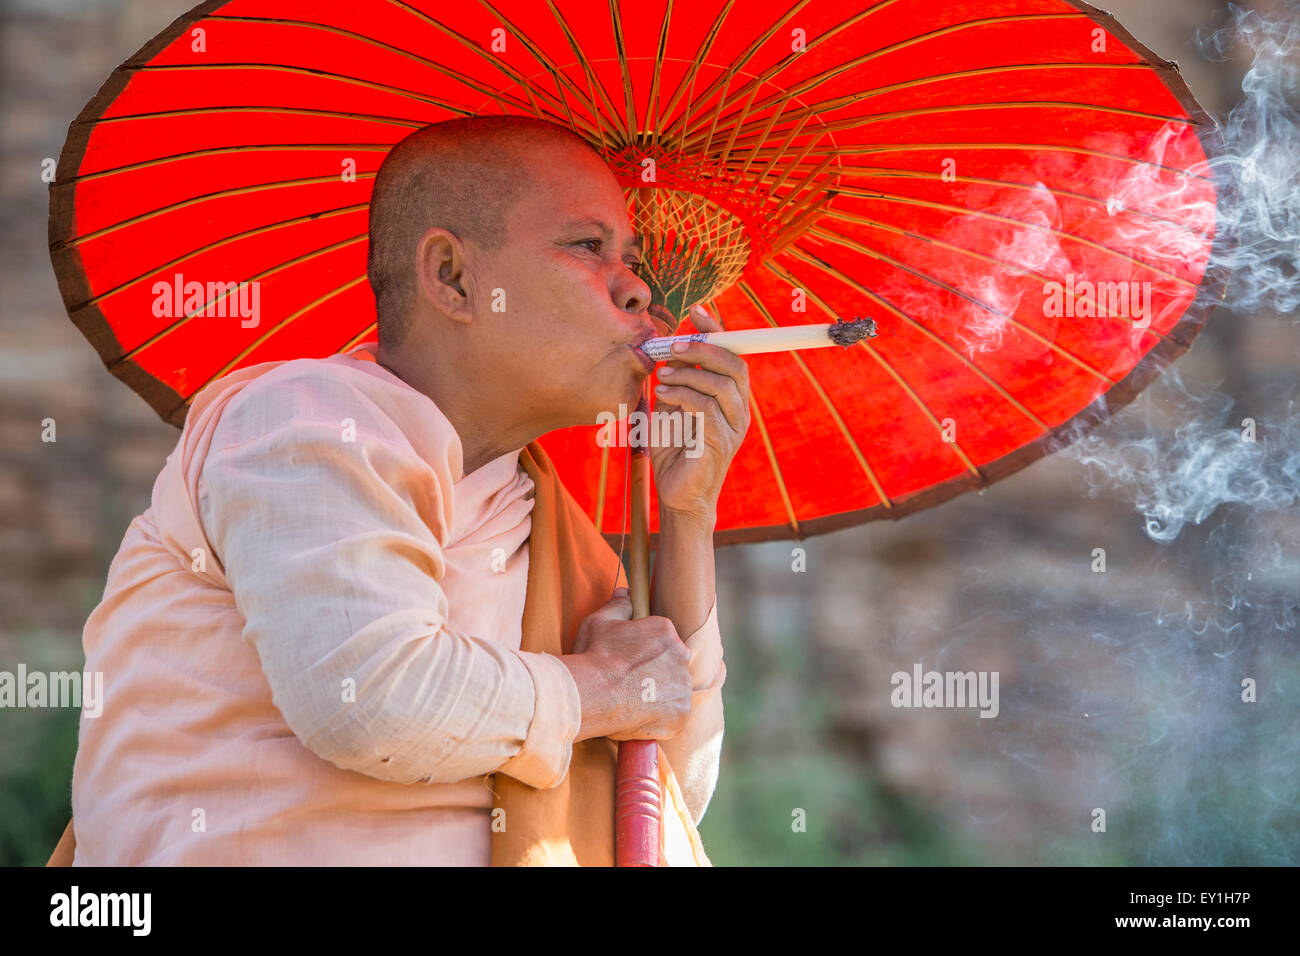 Nun fumeurs blancs, le Myanmar cheroot whacking Banque D'Images